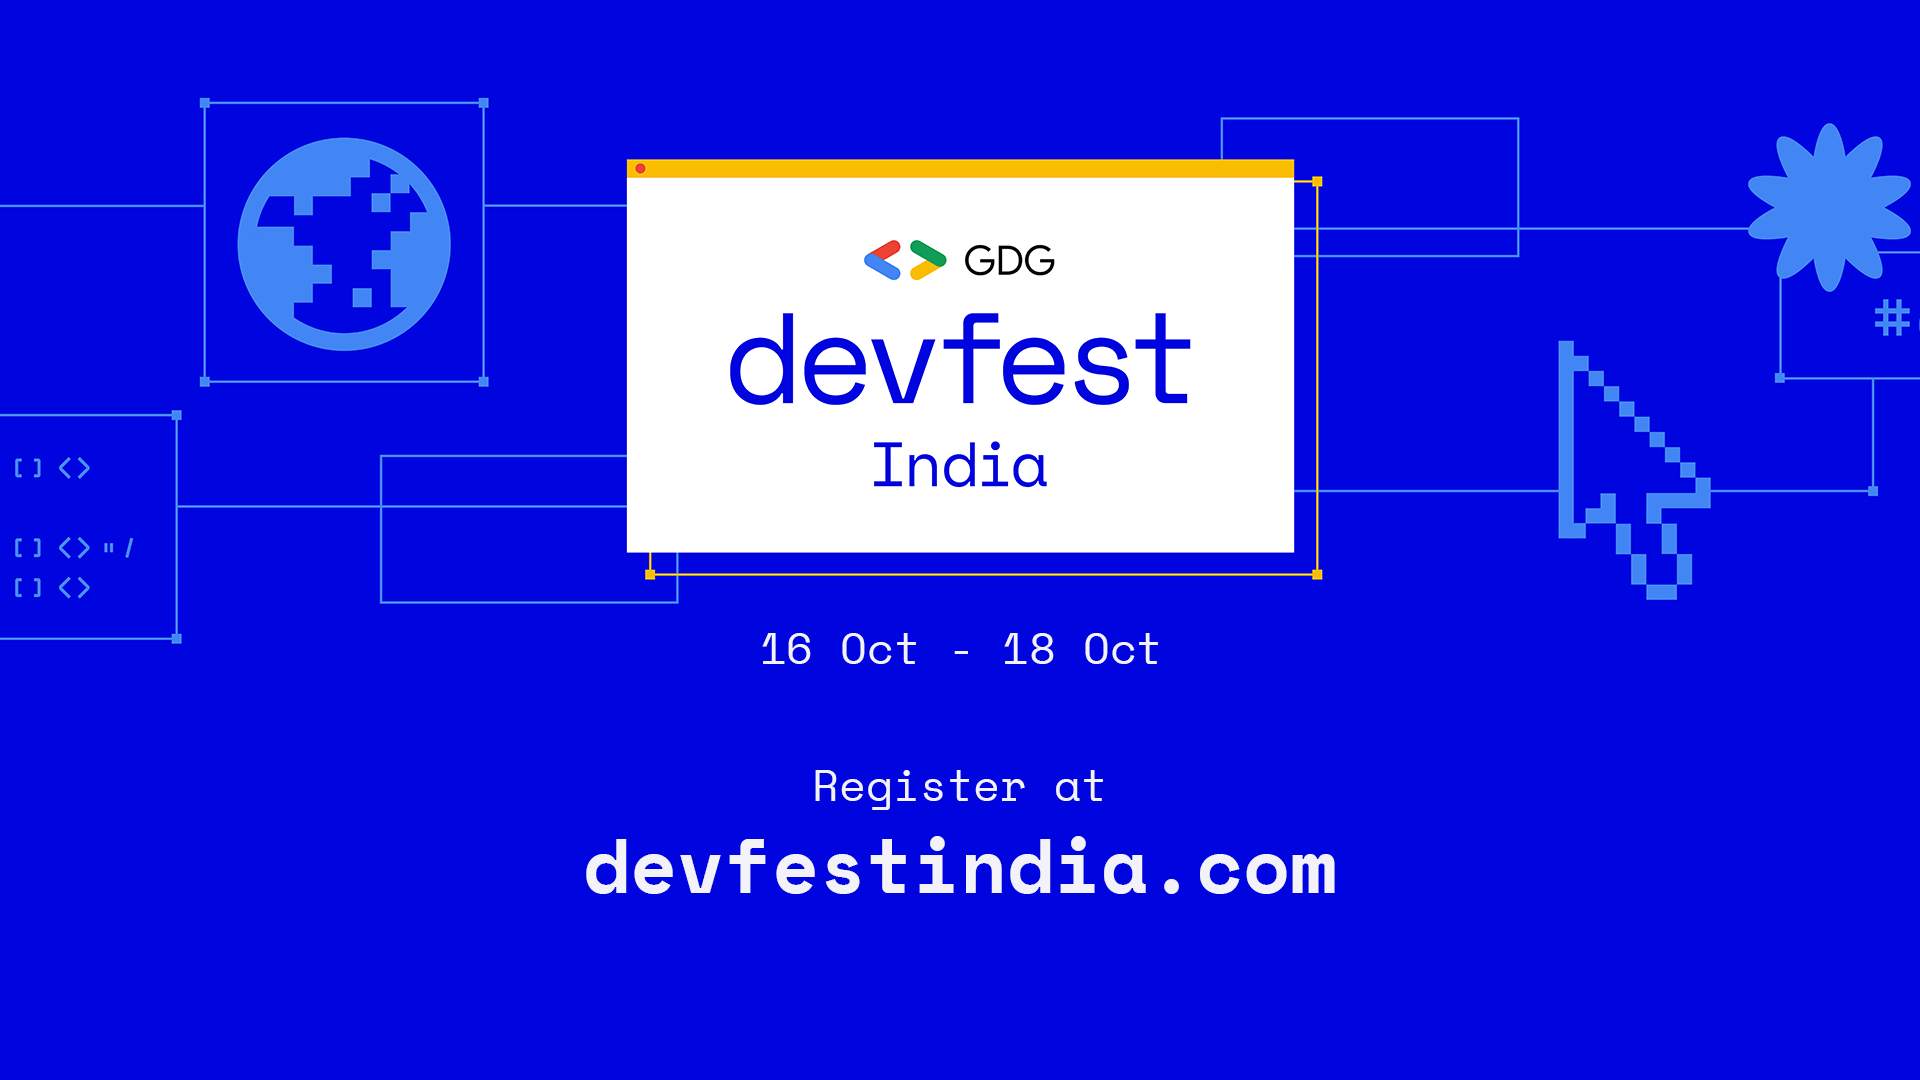 DevFest India